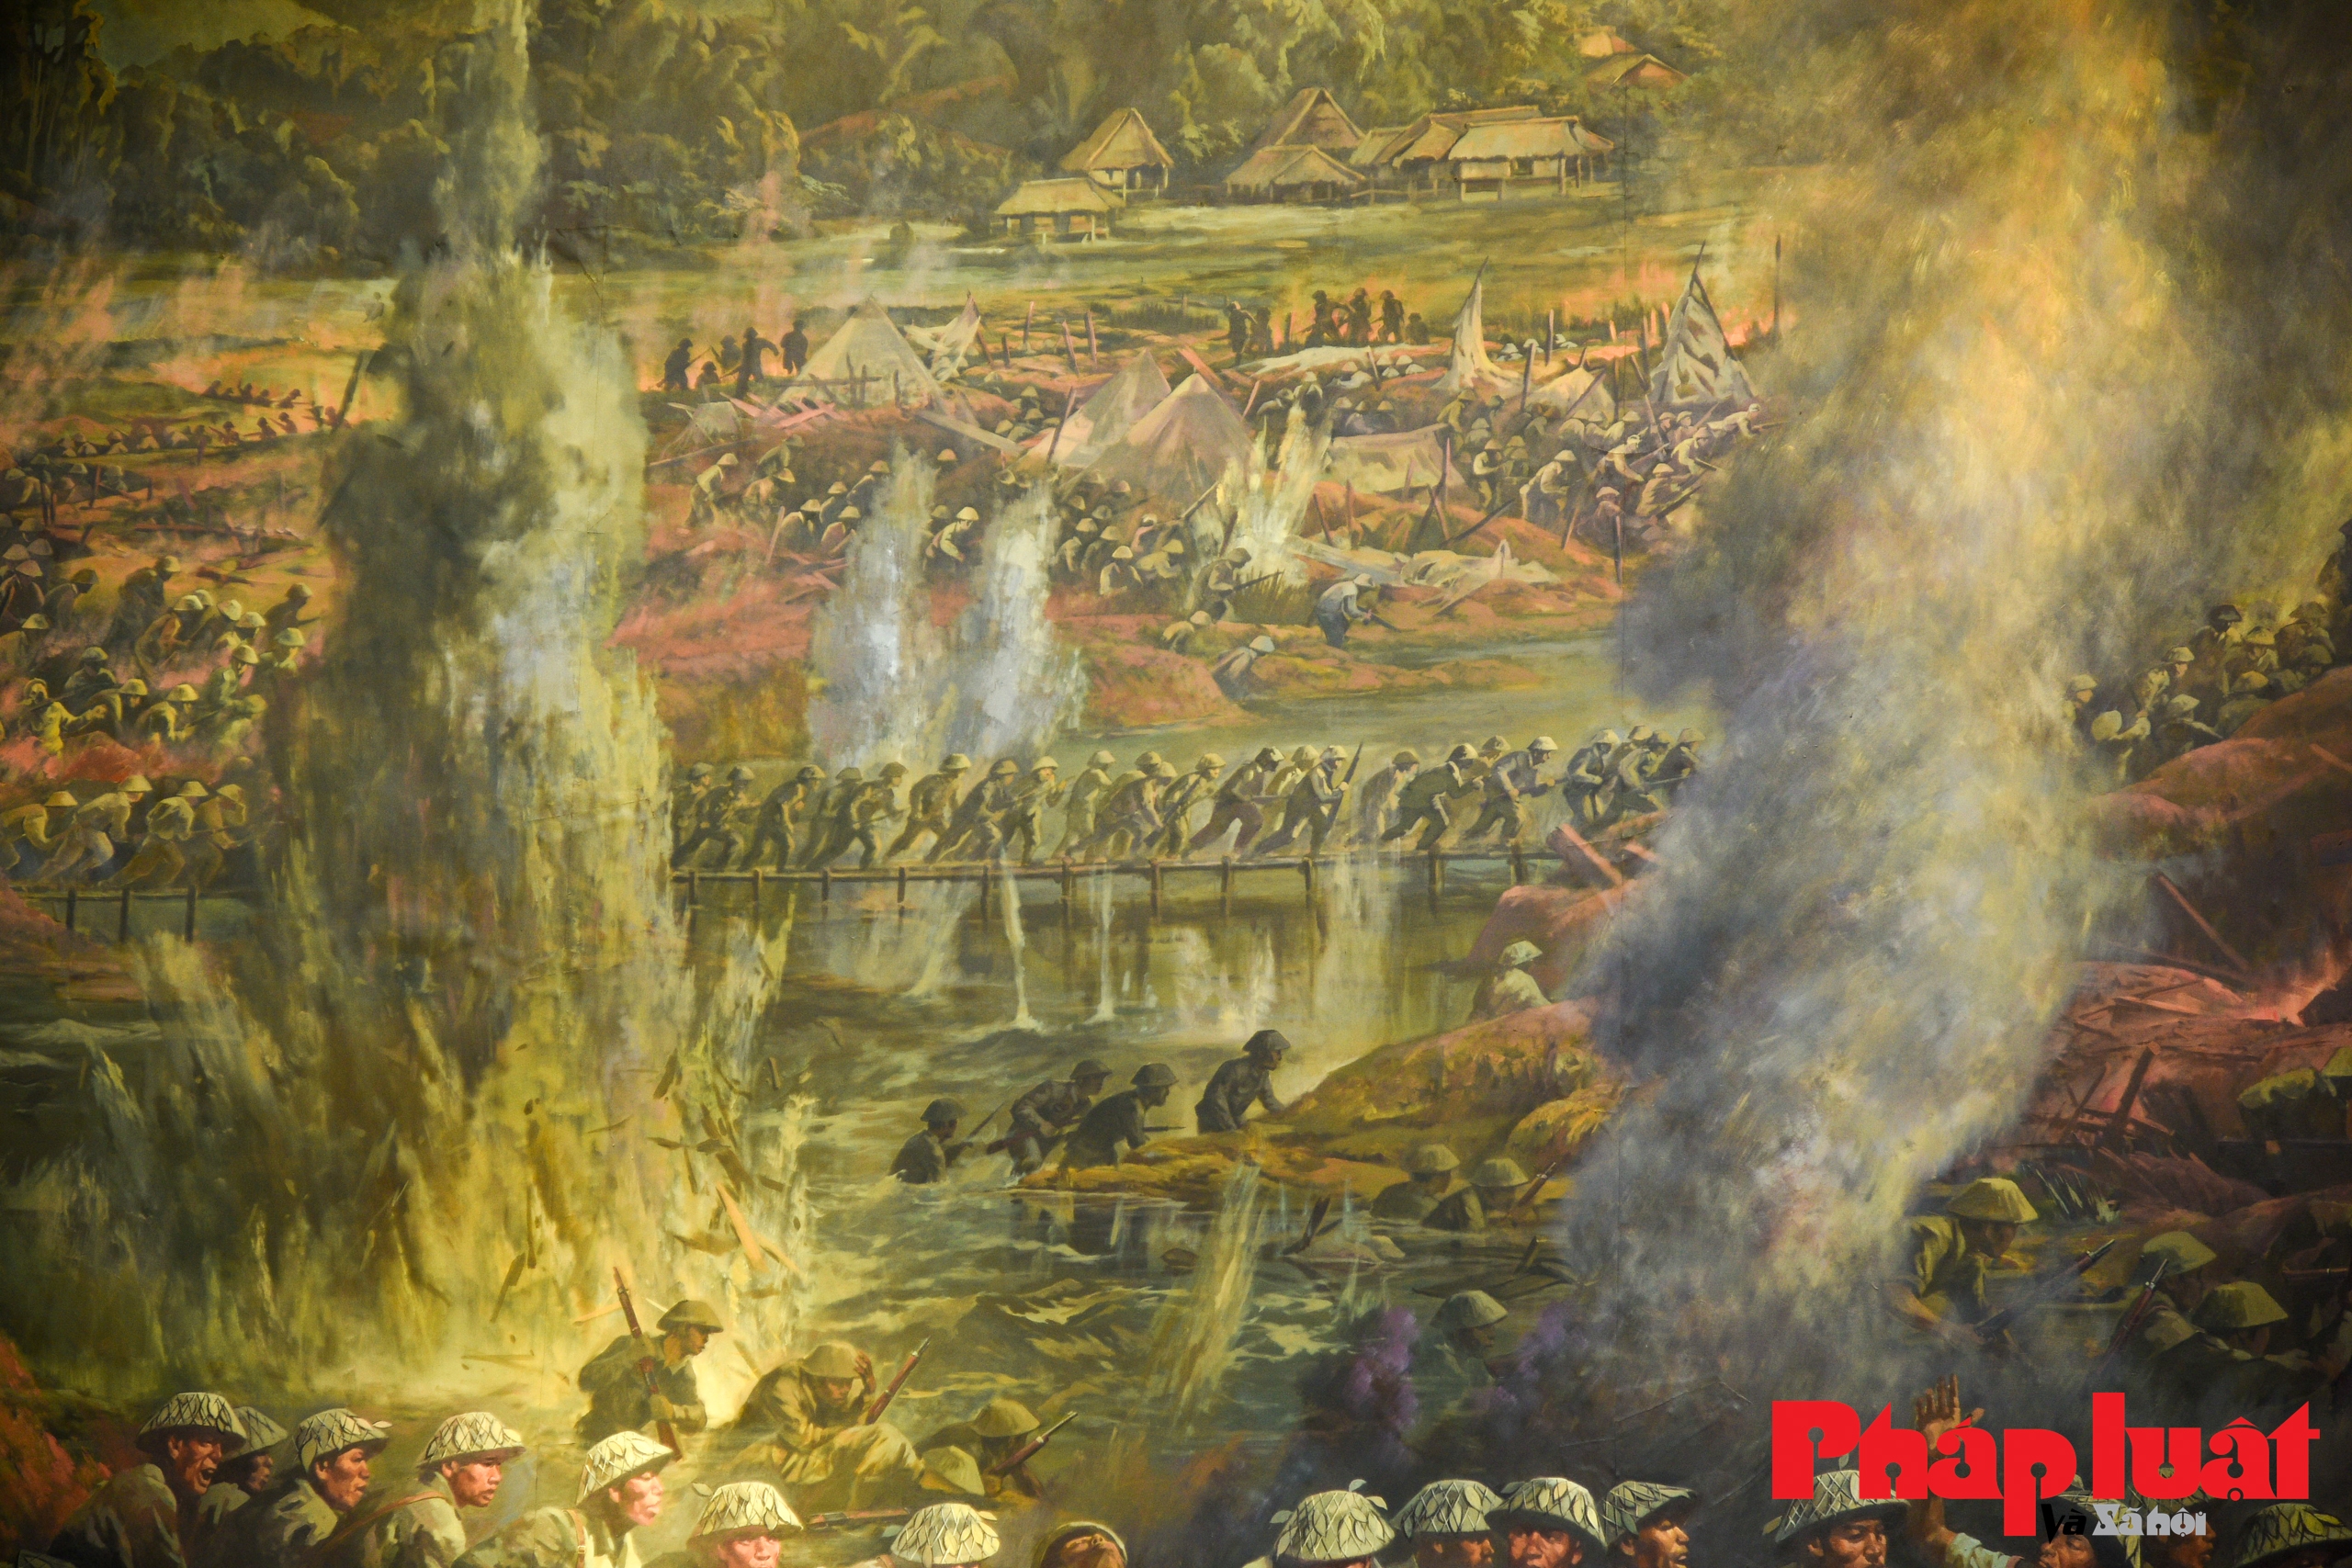 Tranh Panorama tái hiện toàn cảnh chiến dịch Điện Biên Phủ hào hùng